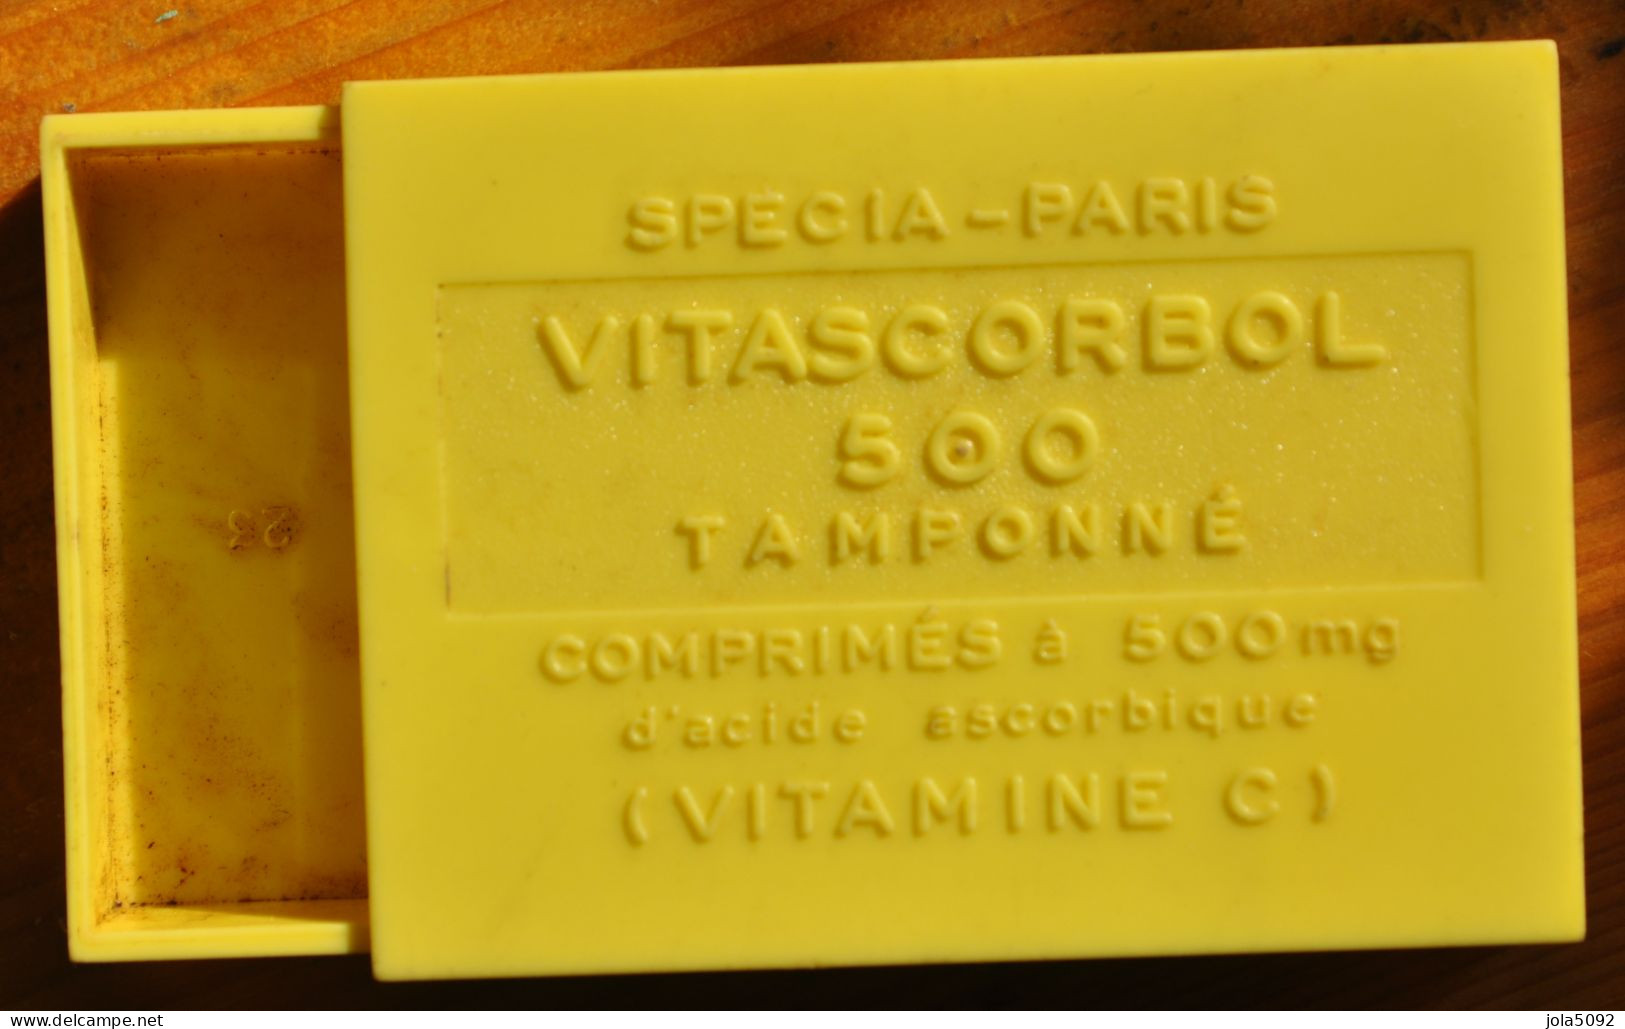 Ancienne Boite En Plastique Pastilles VITASCORBOL 500 - Vitamines C - SPECIA PARIS - Boîtes